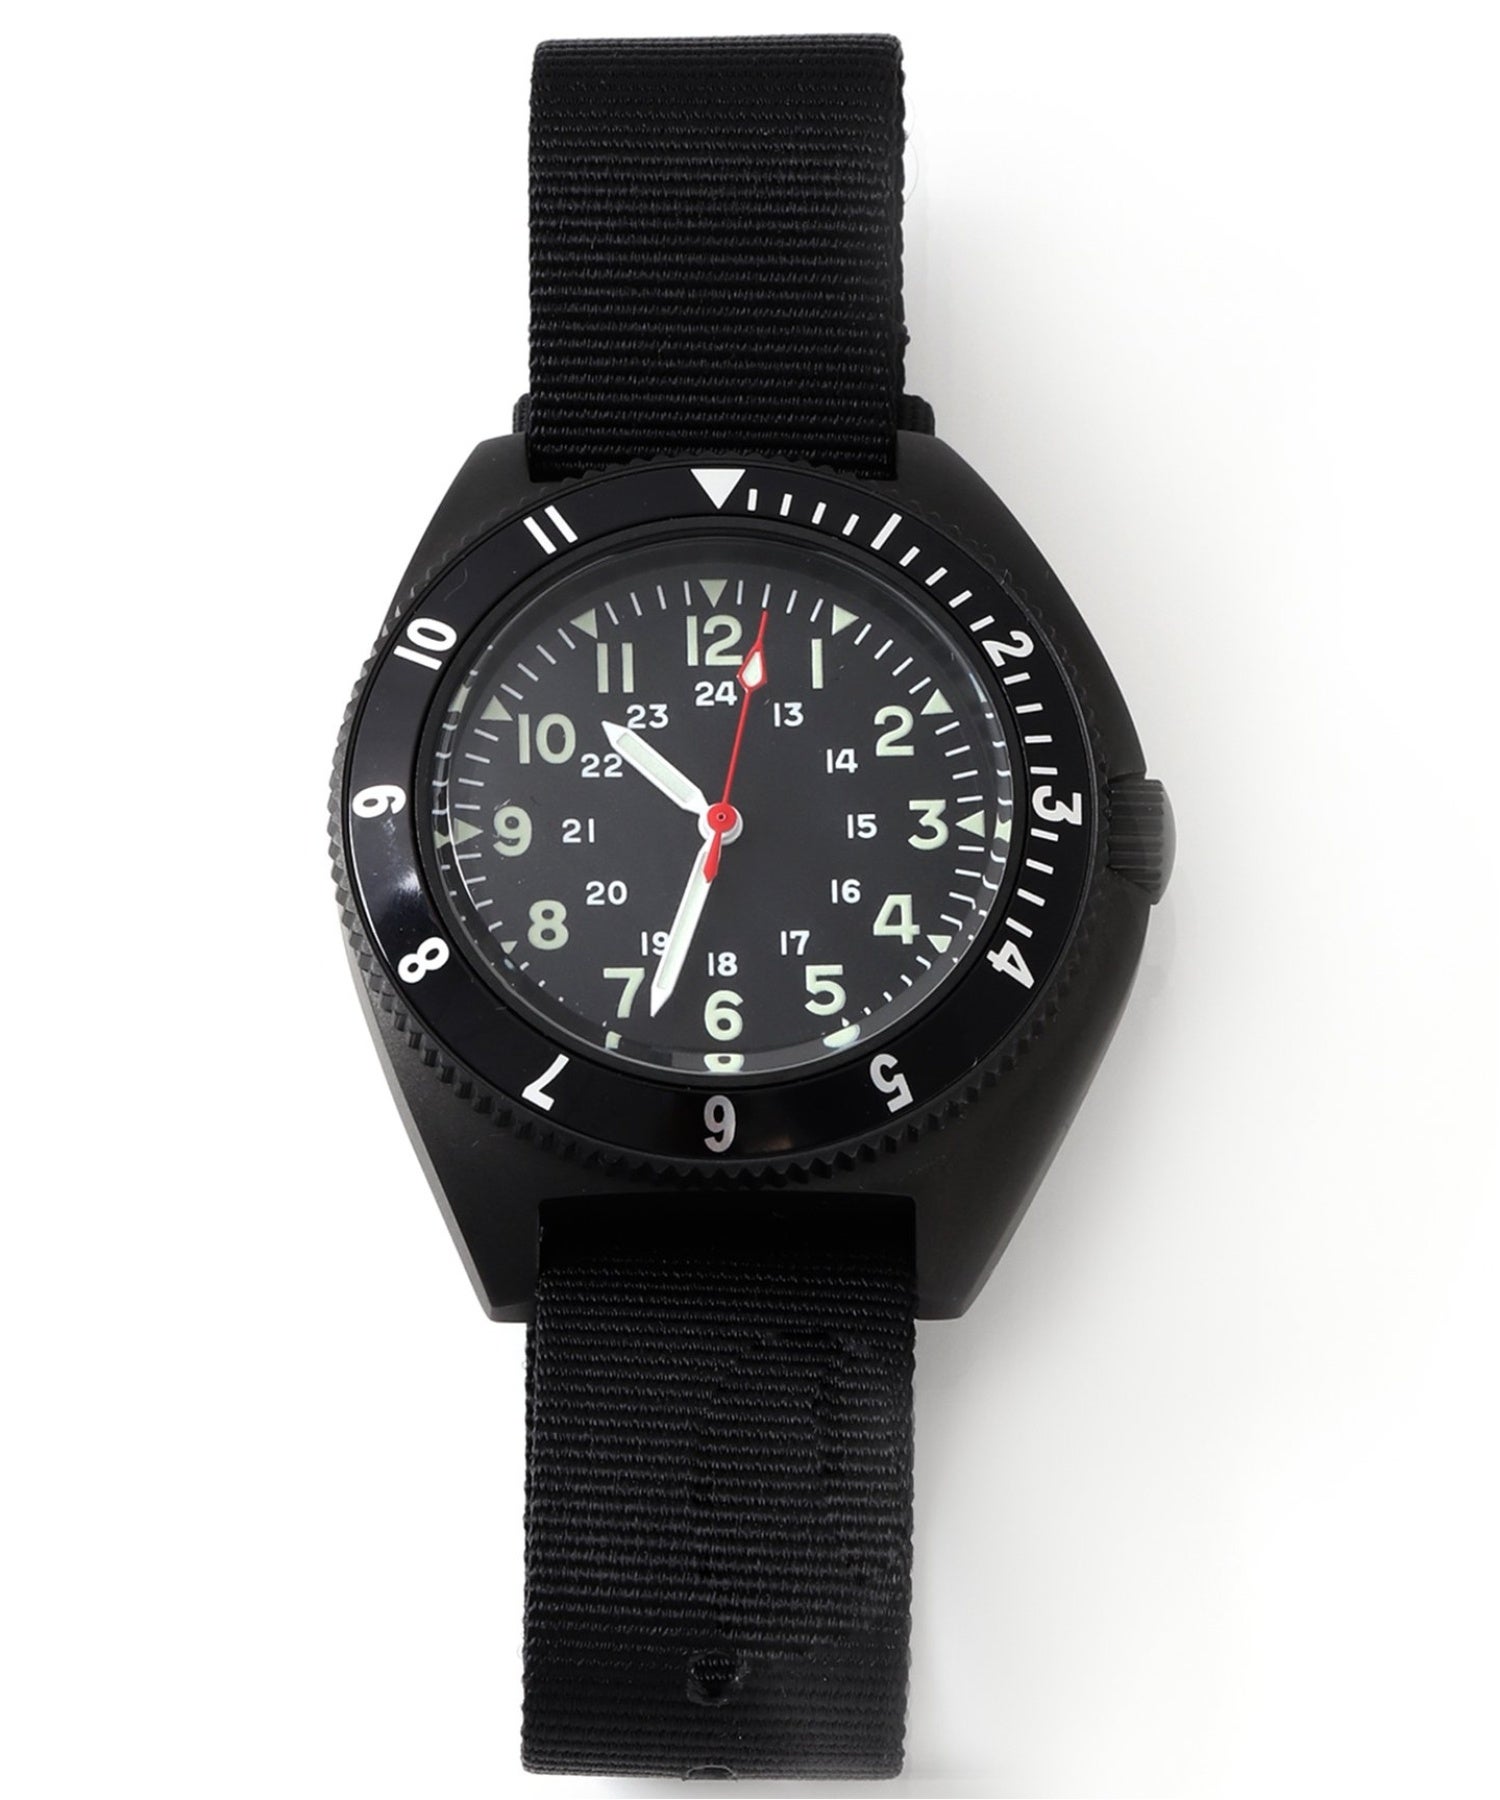 ニューヨーク発祥の腕時計ブランドが数年ぶりに復活！「BENRUS×JOURNAL STANDARD」別注モデルが数量限定でリリース。店頭販売に先駆けてオンラインストアでは予約受付開始。